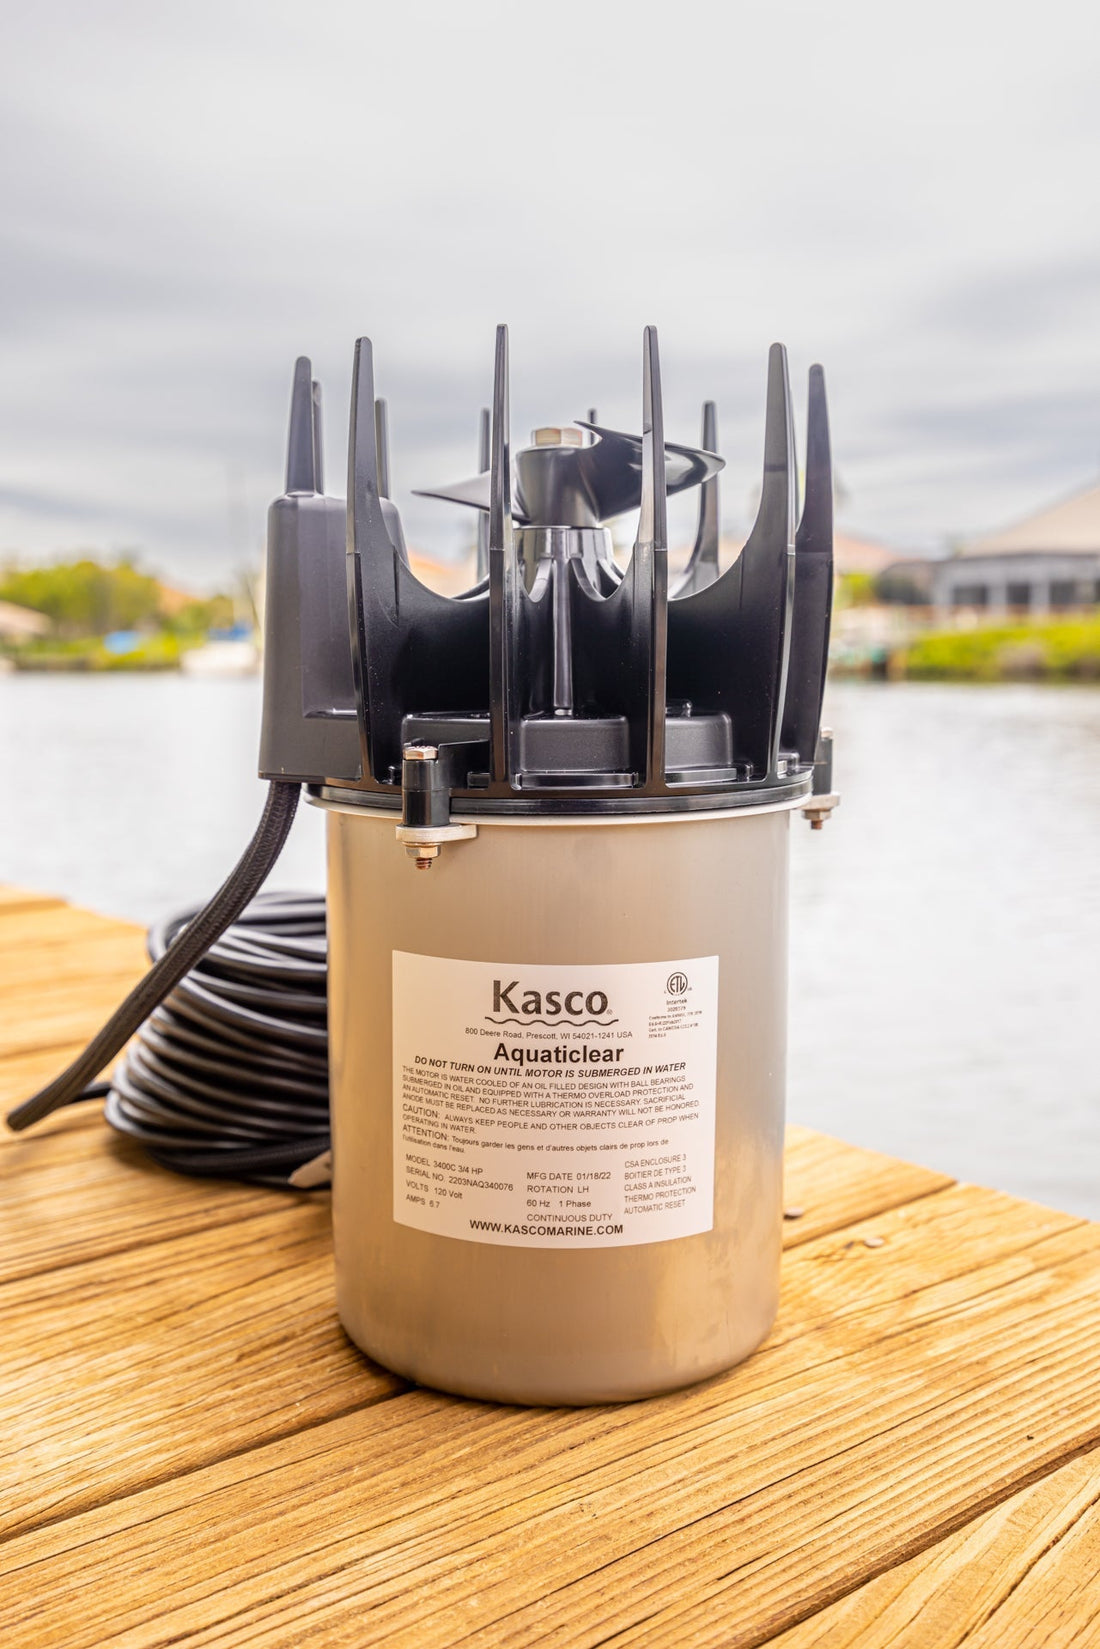 Kasco Aquaticlear 4400C Water Circulator (1 HP / 120 Volt)